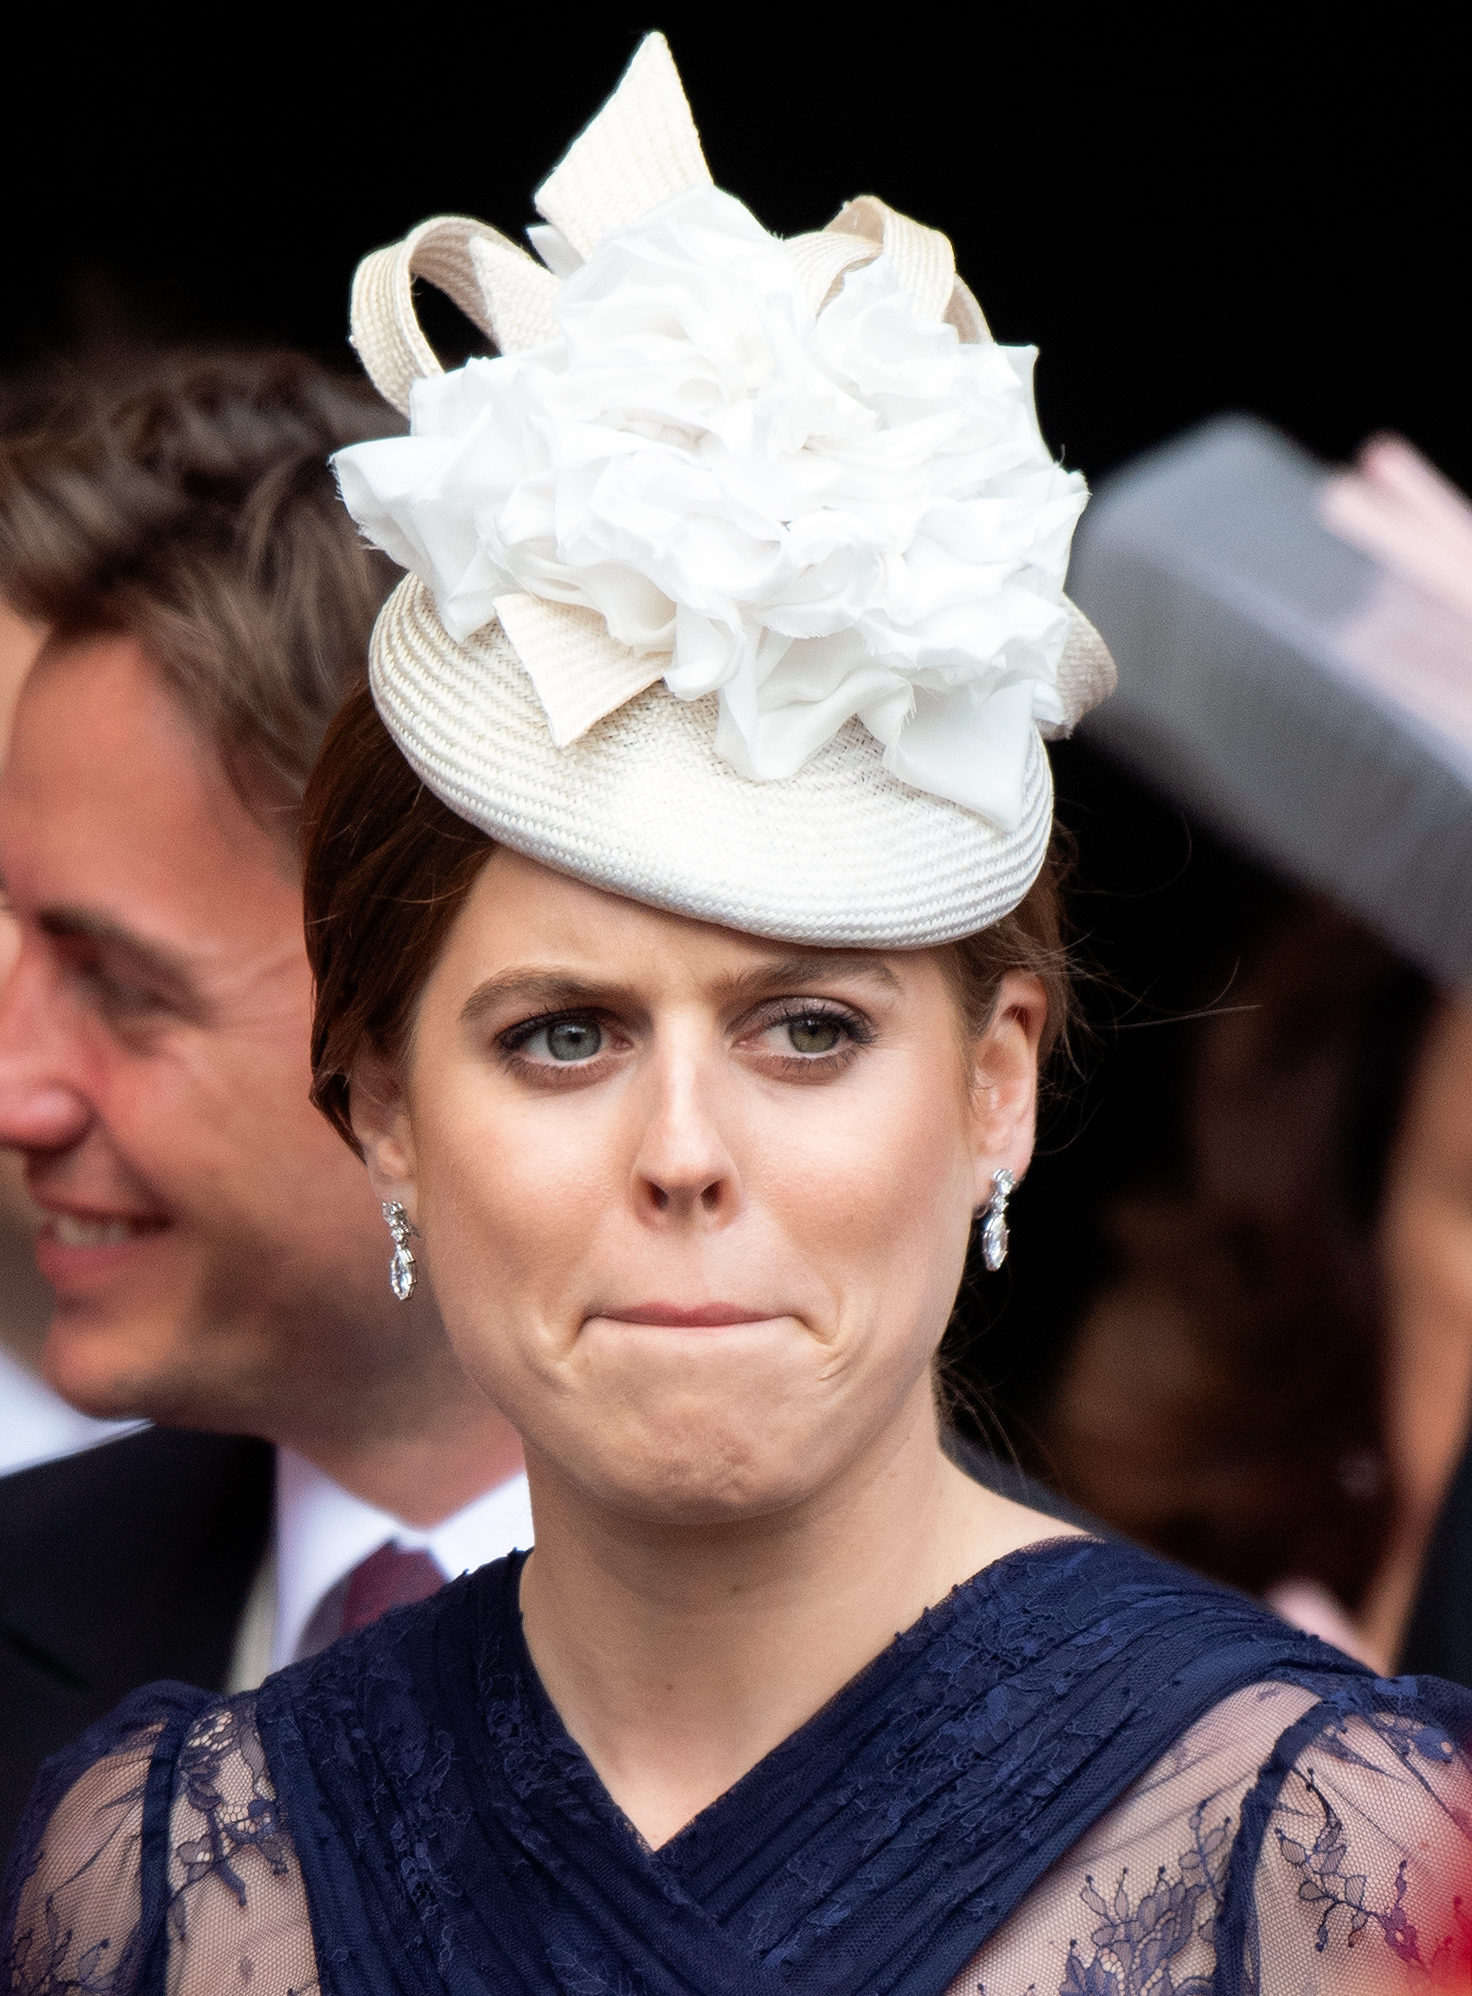 La princesa Beatrice asiste a la boda de lady Gabriella Windsor y Thomas Kingston en la Capilla de San Jorge el 18 de mayo de 2019 en Windsor, Inglaterra. | Foto: Getty Images